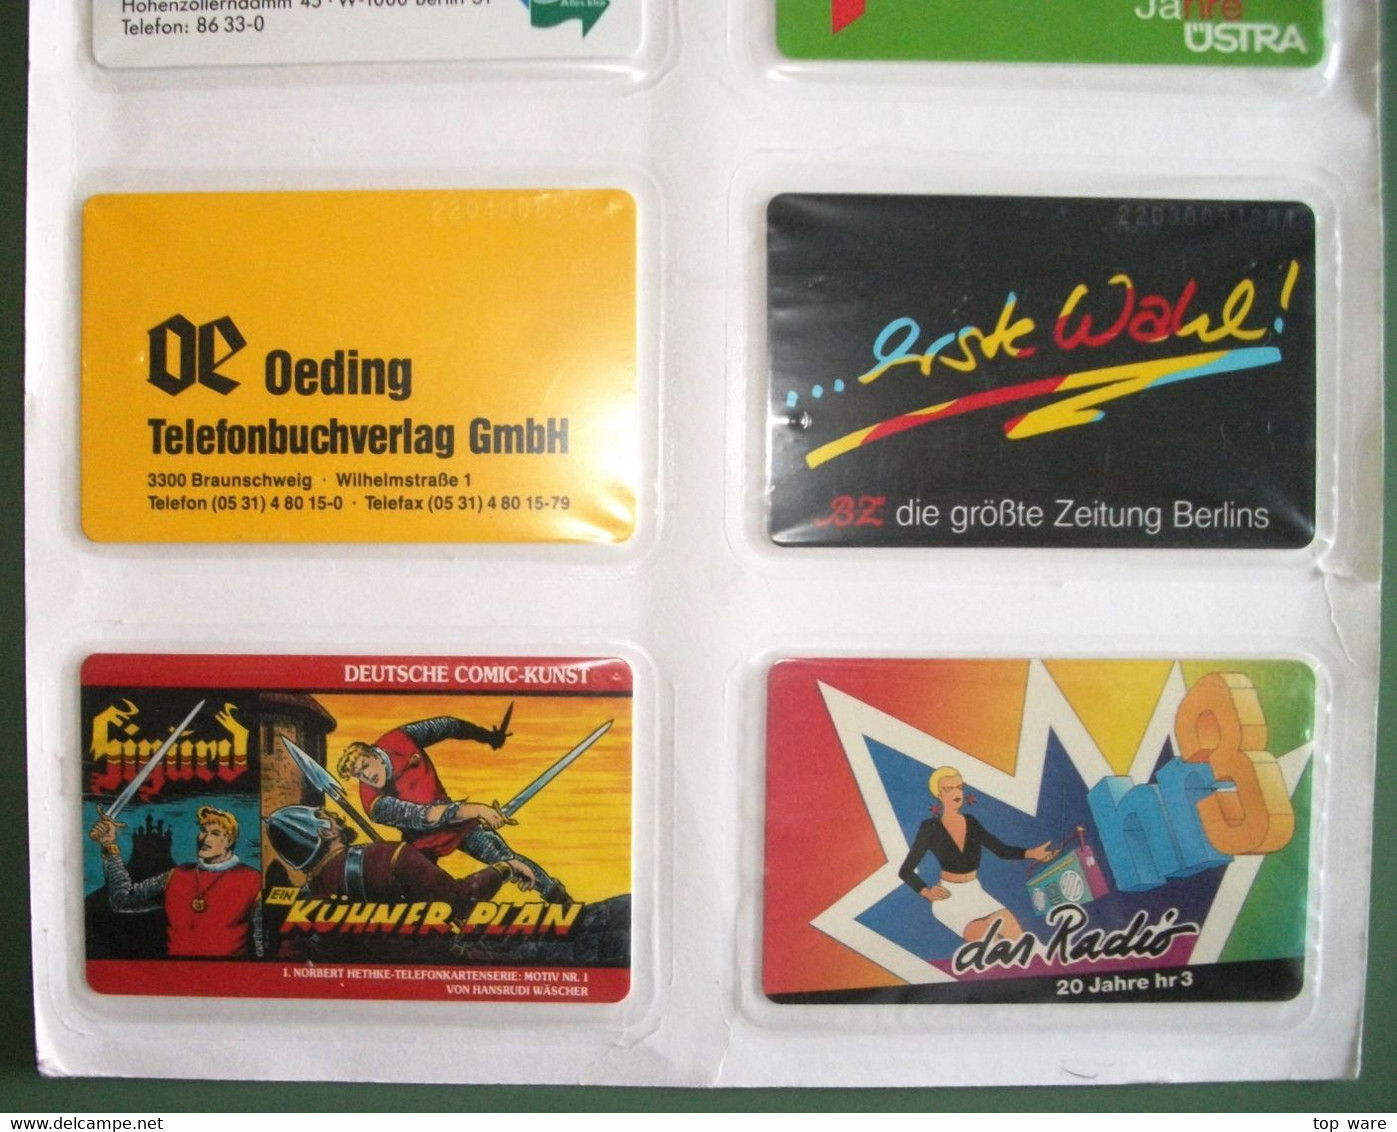 8 Telefonkarten Aus 1992 - S41 S44 S45 S47 S48 S49 S52 S57  - Original Verschweißt Vom Zentralen Kartenservice - Collezioni